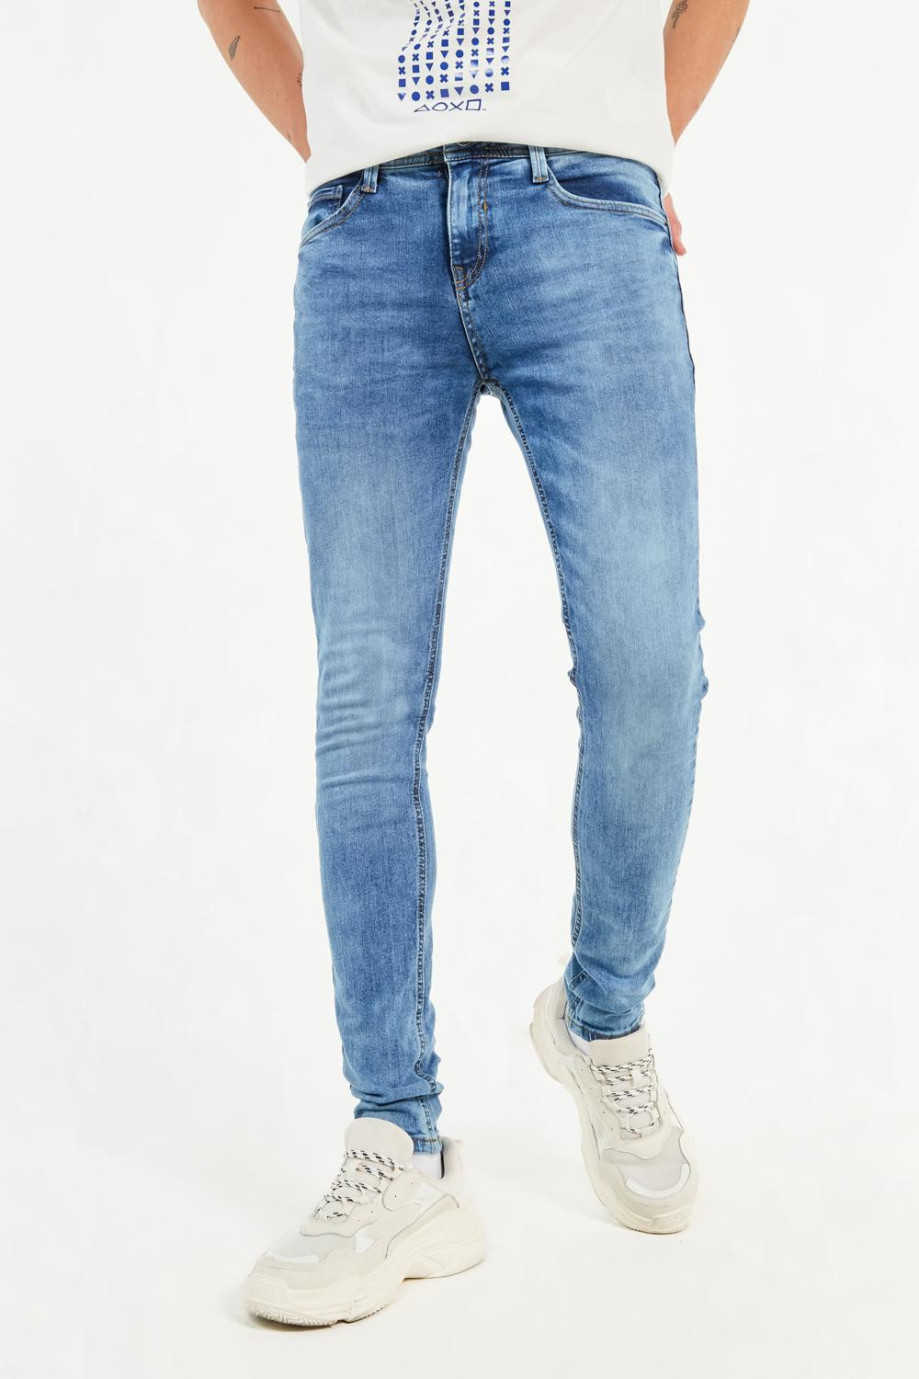 Jean súper skinny azul medio tiro bajo con costuras en contraste